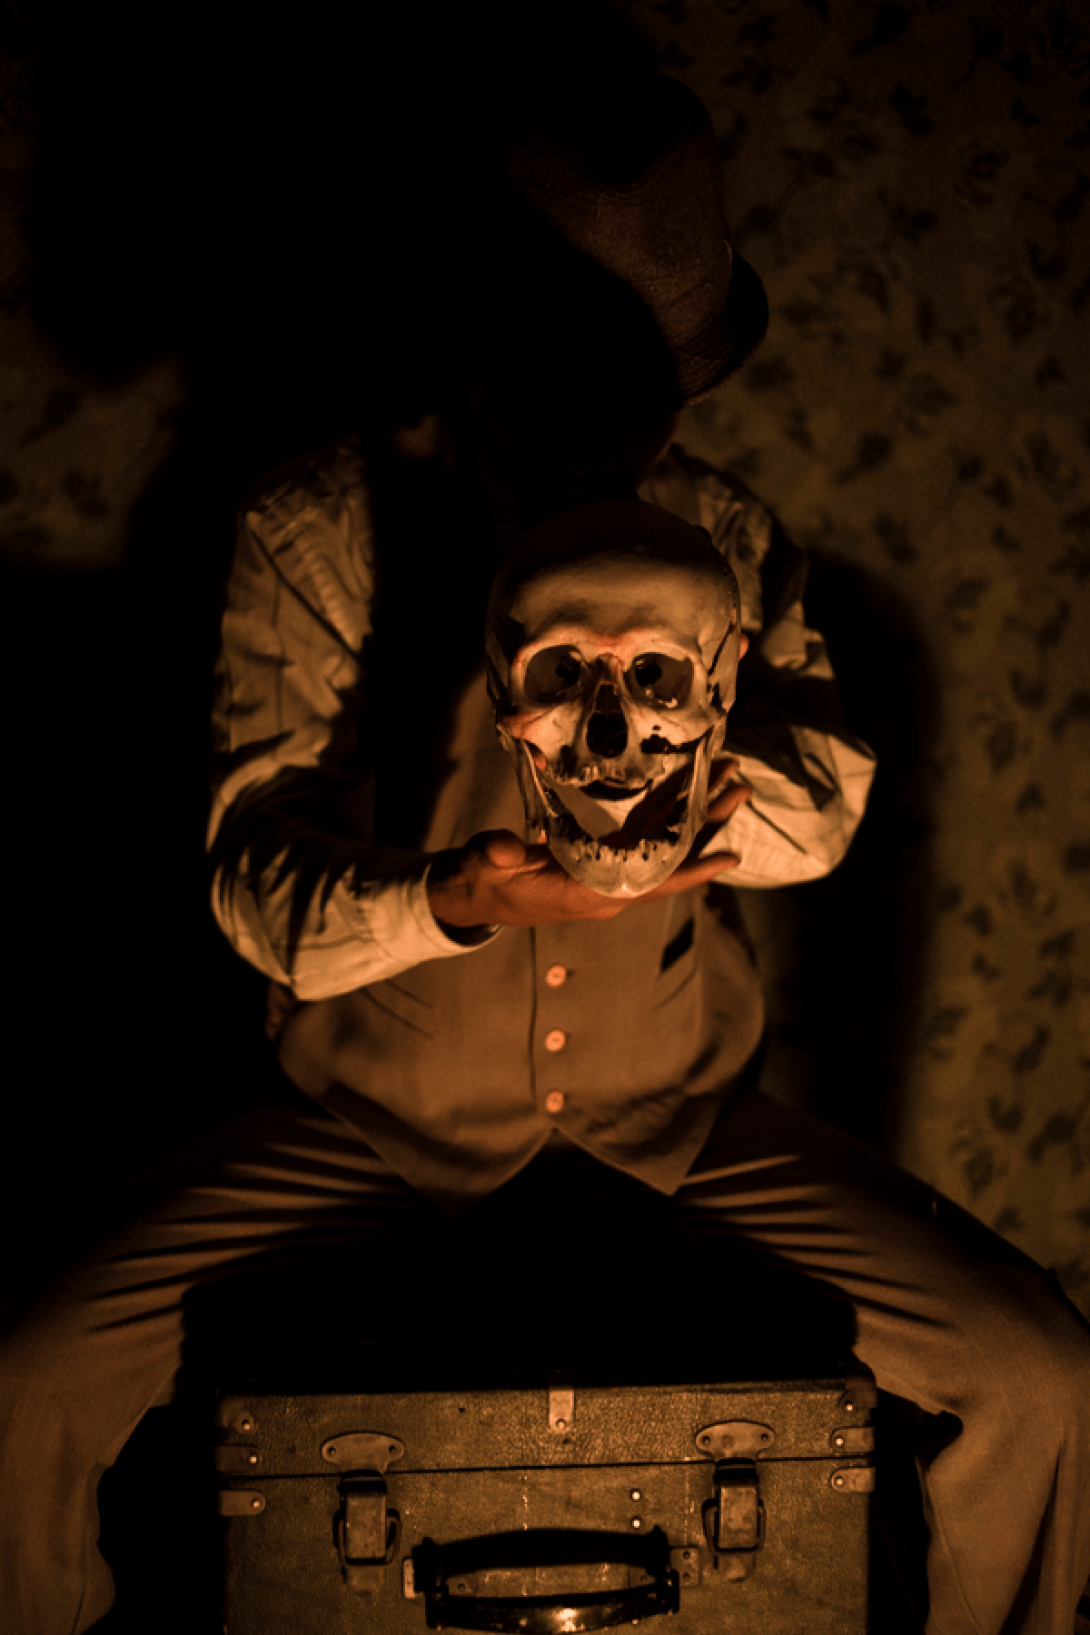 Actor sentado sobre una maleta en la oscuridad muestra una máscara entre sus manos.